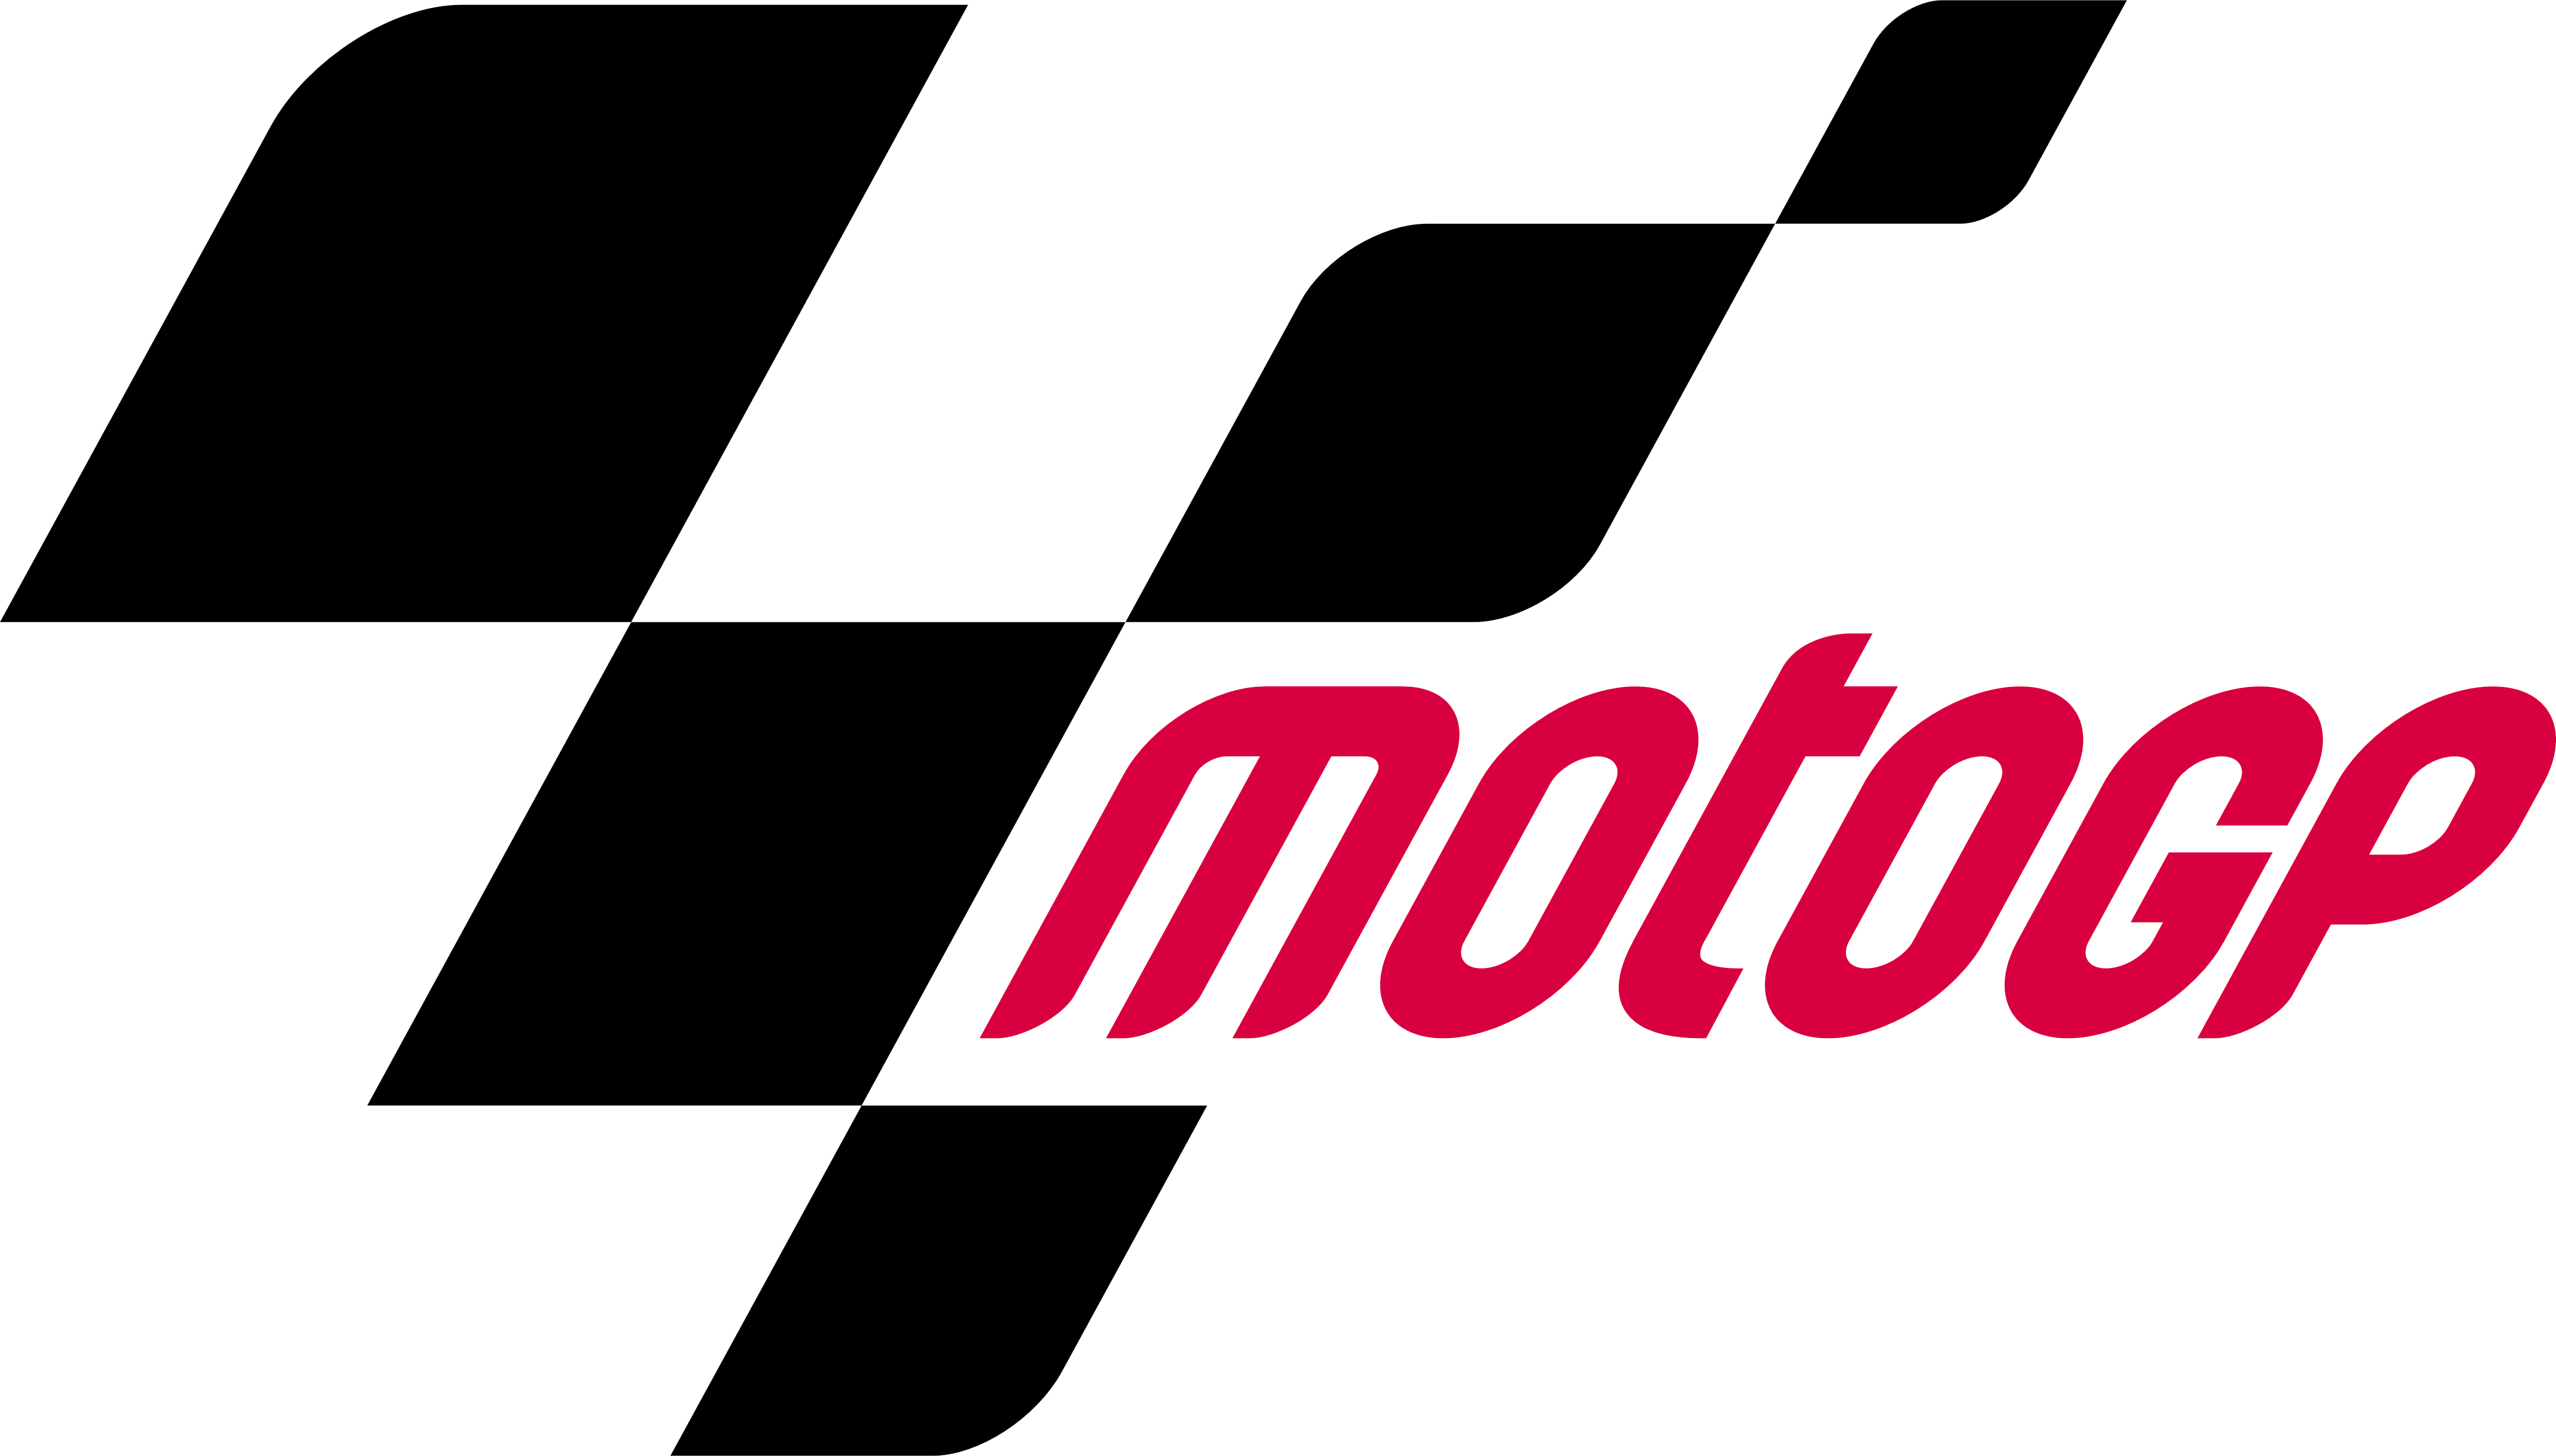 GP Logo - Moto GP – Logos Download